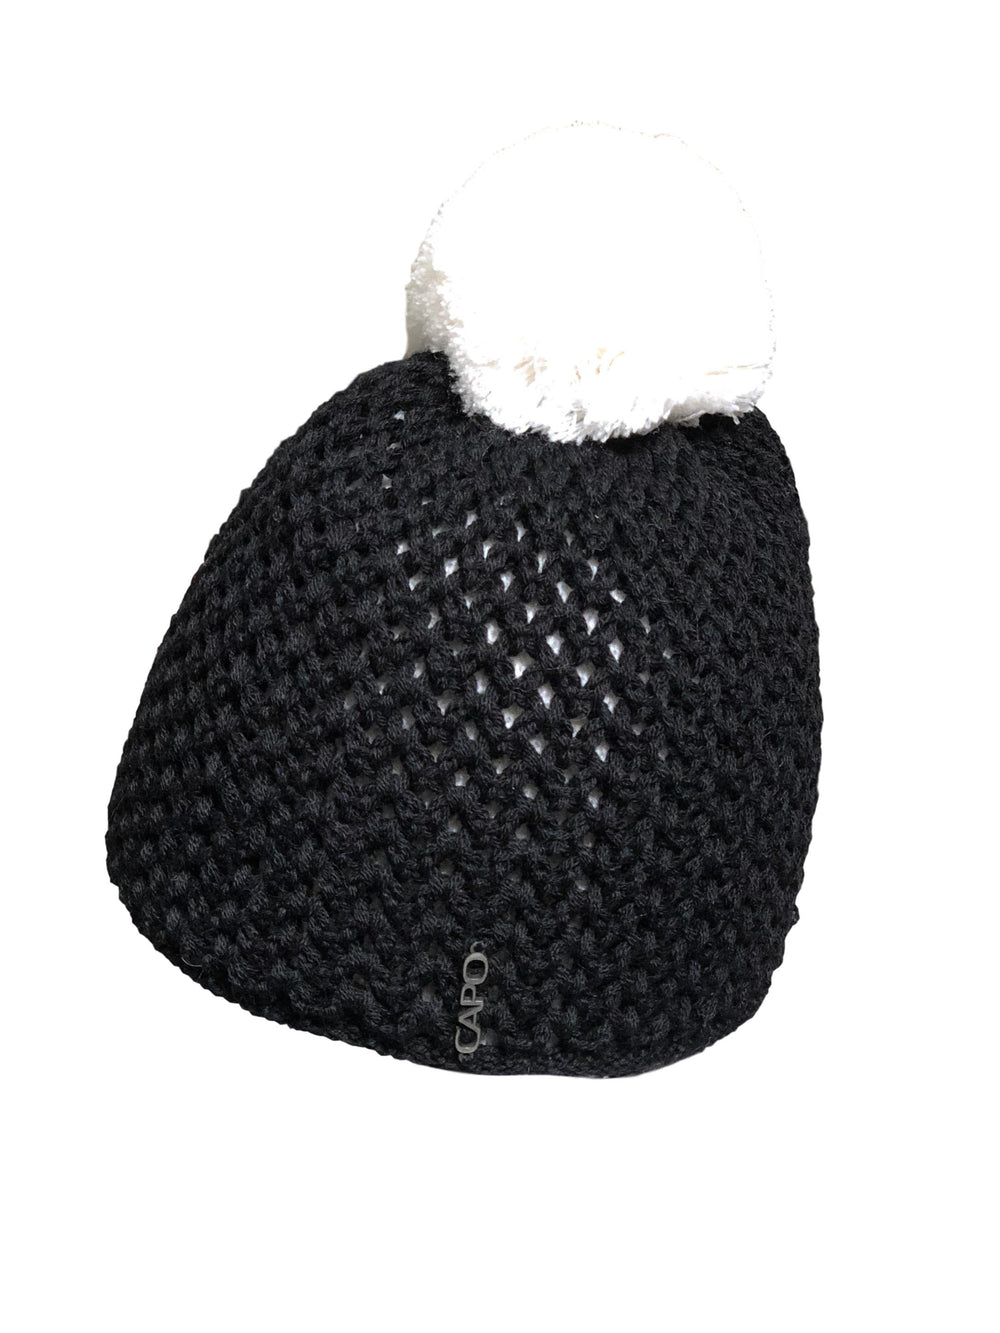 Capo winterwarme Strickmütze mit Bommel aus Wolle-Capo-hutwelt